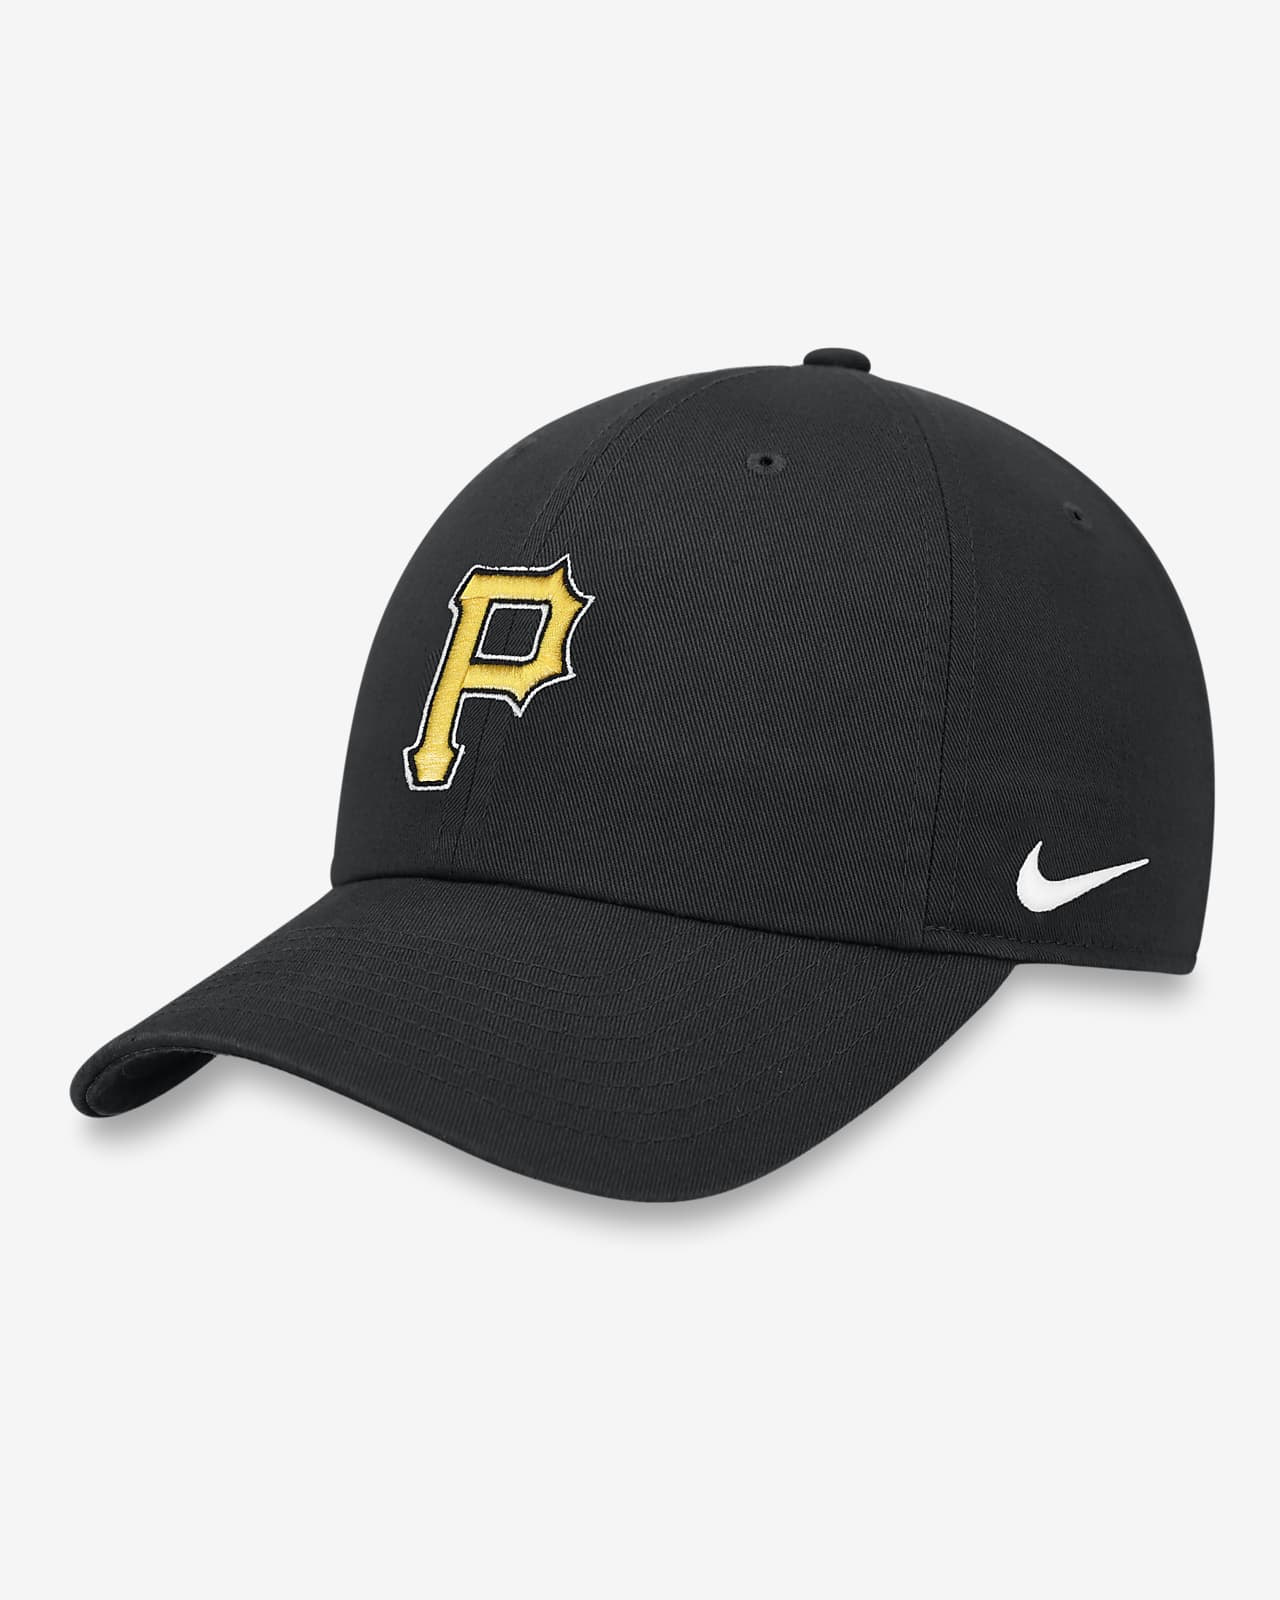 Pittsburgh Pirates Heritage86 Men's Nike MLB Adjustable Hat